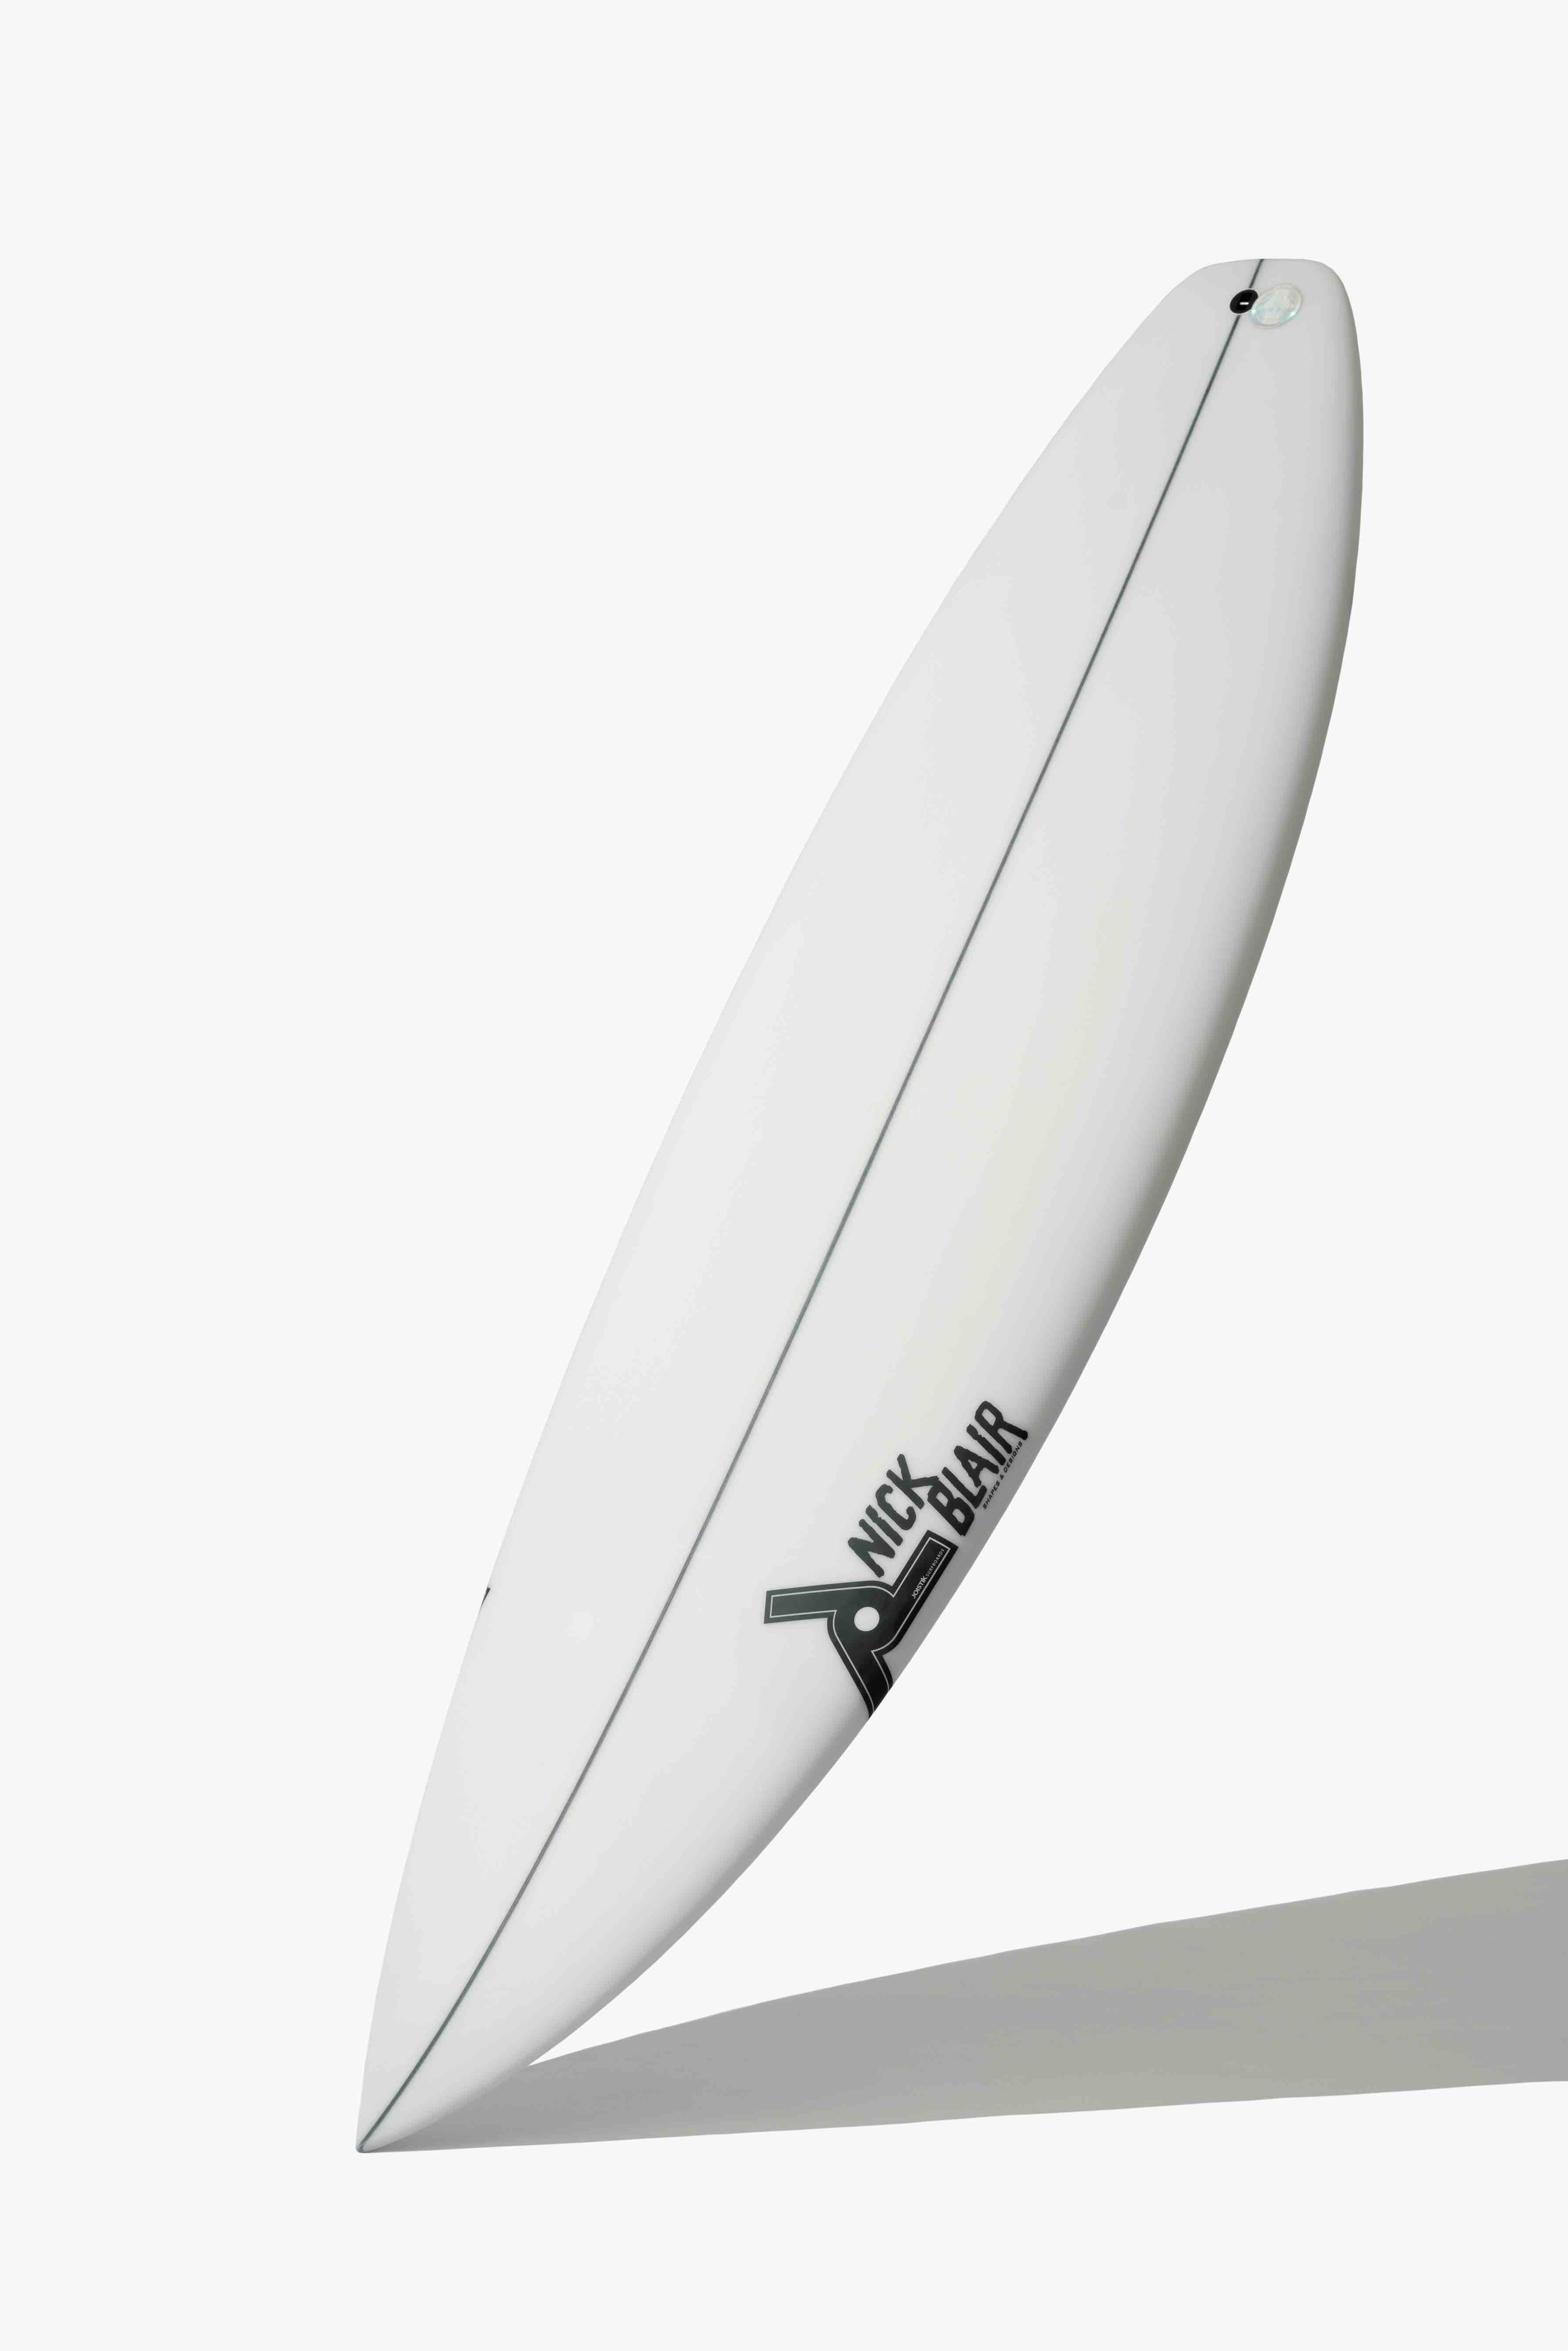 驚異のリピート率を誇るトップ・サーフボード・ブランド | SURFIN'LIFE